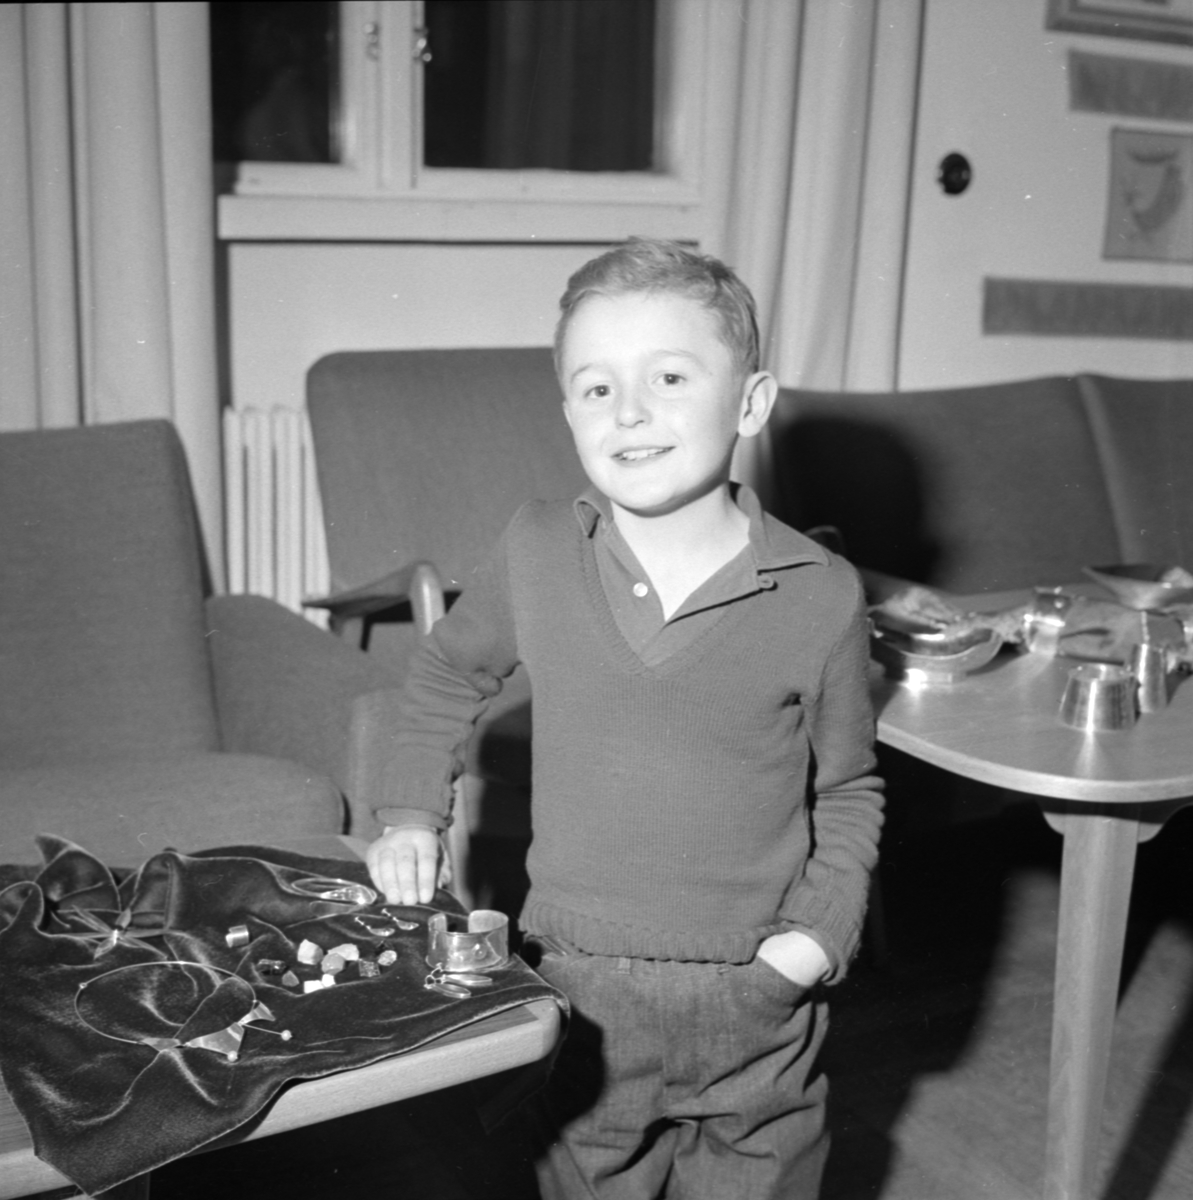 "Silversmide är hobby för 11-åring i Upsala", Uppsala april 1960.